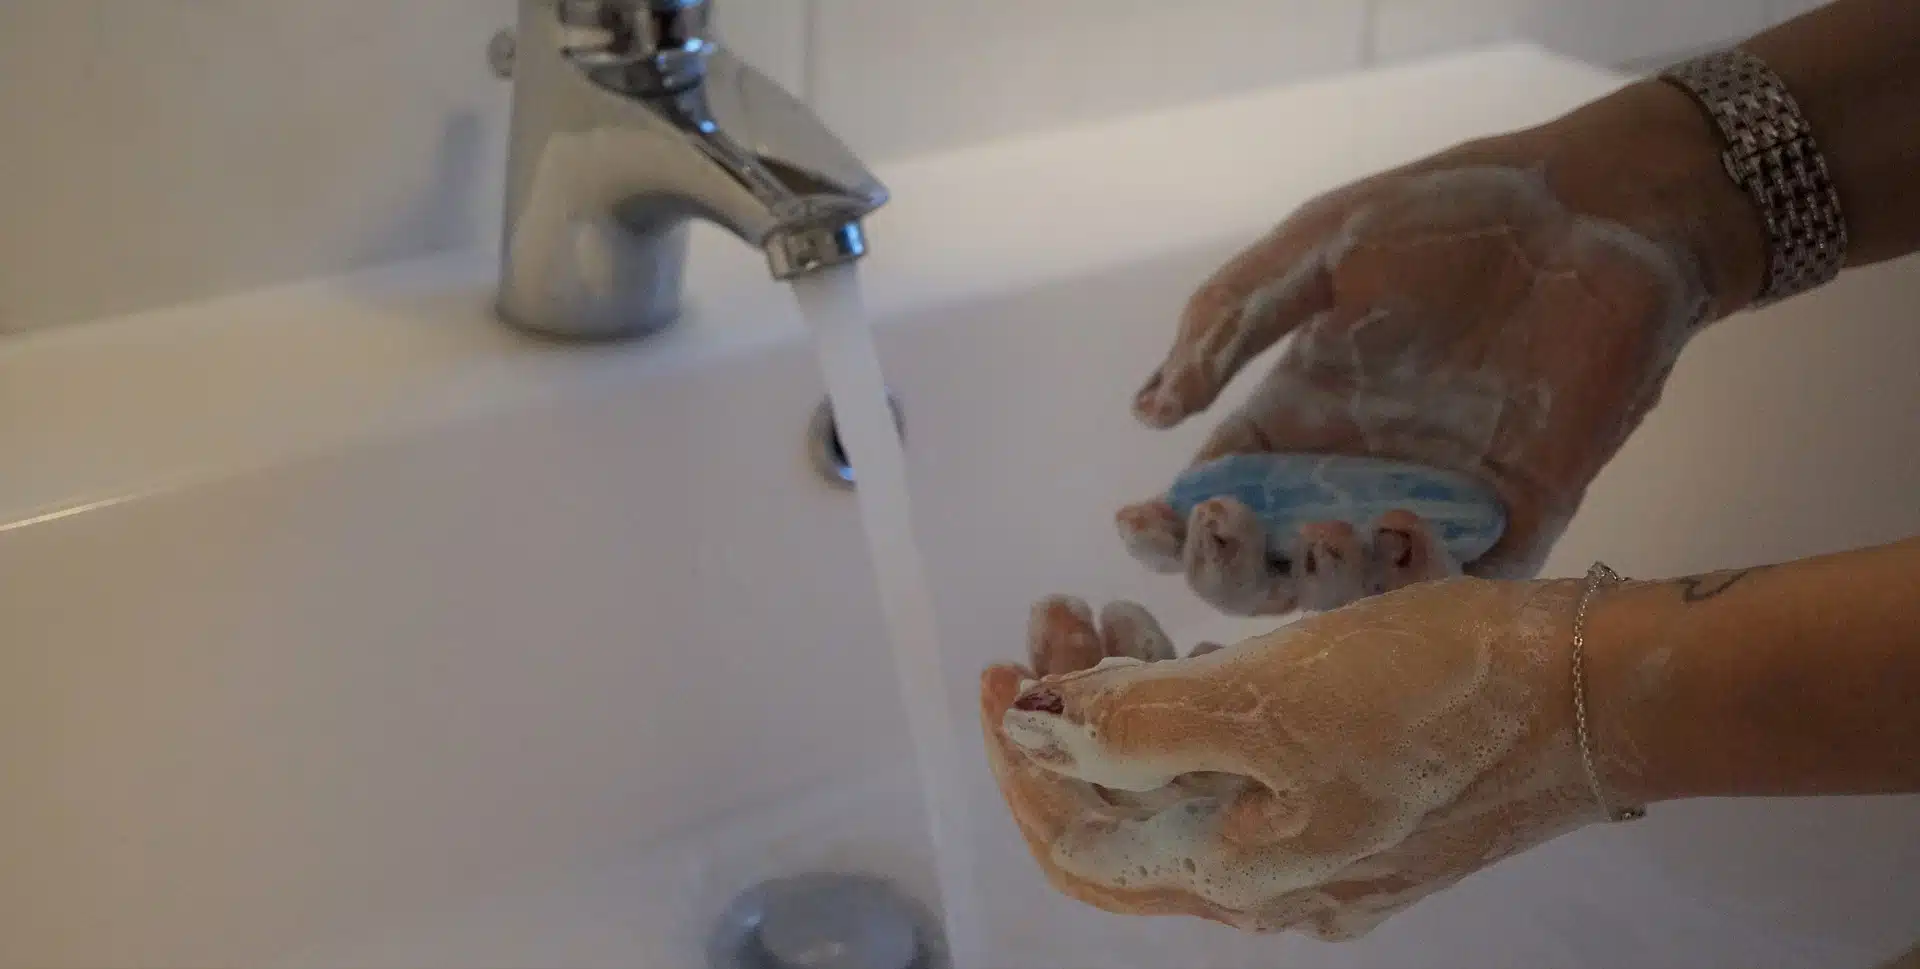 Lavare le mani